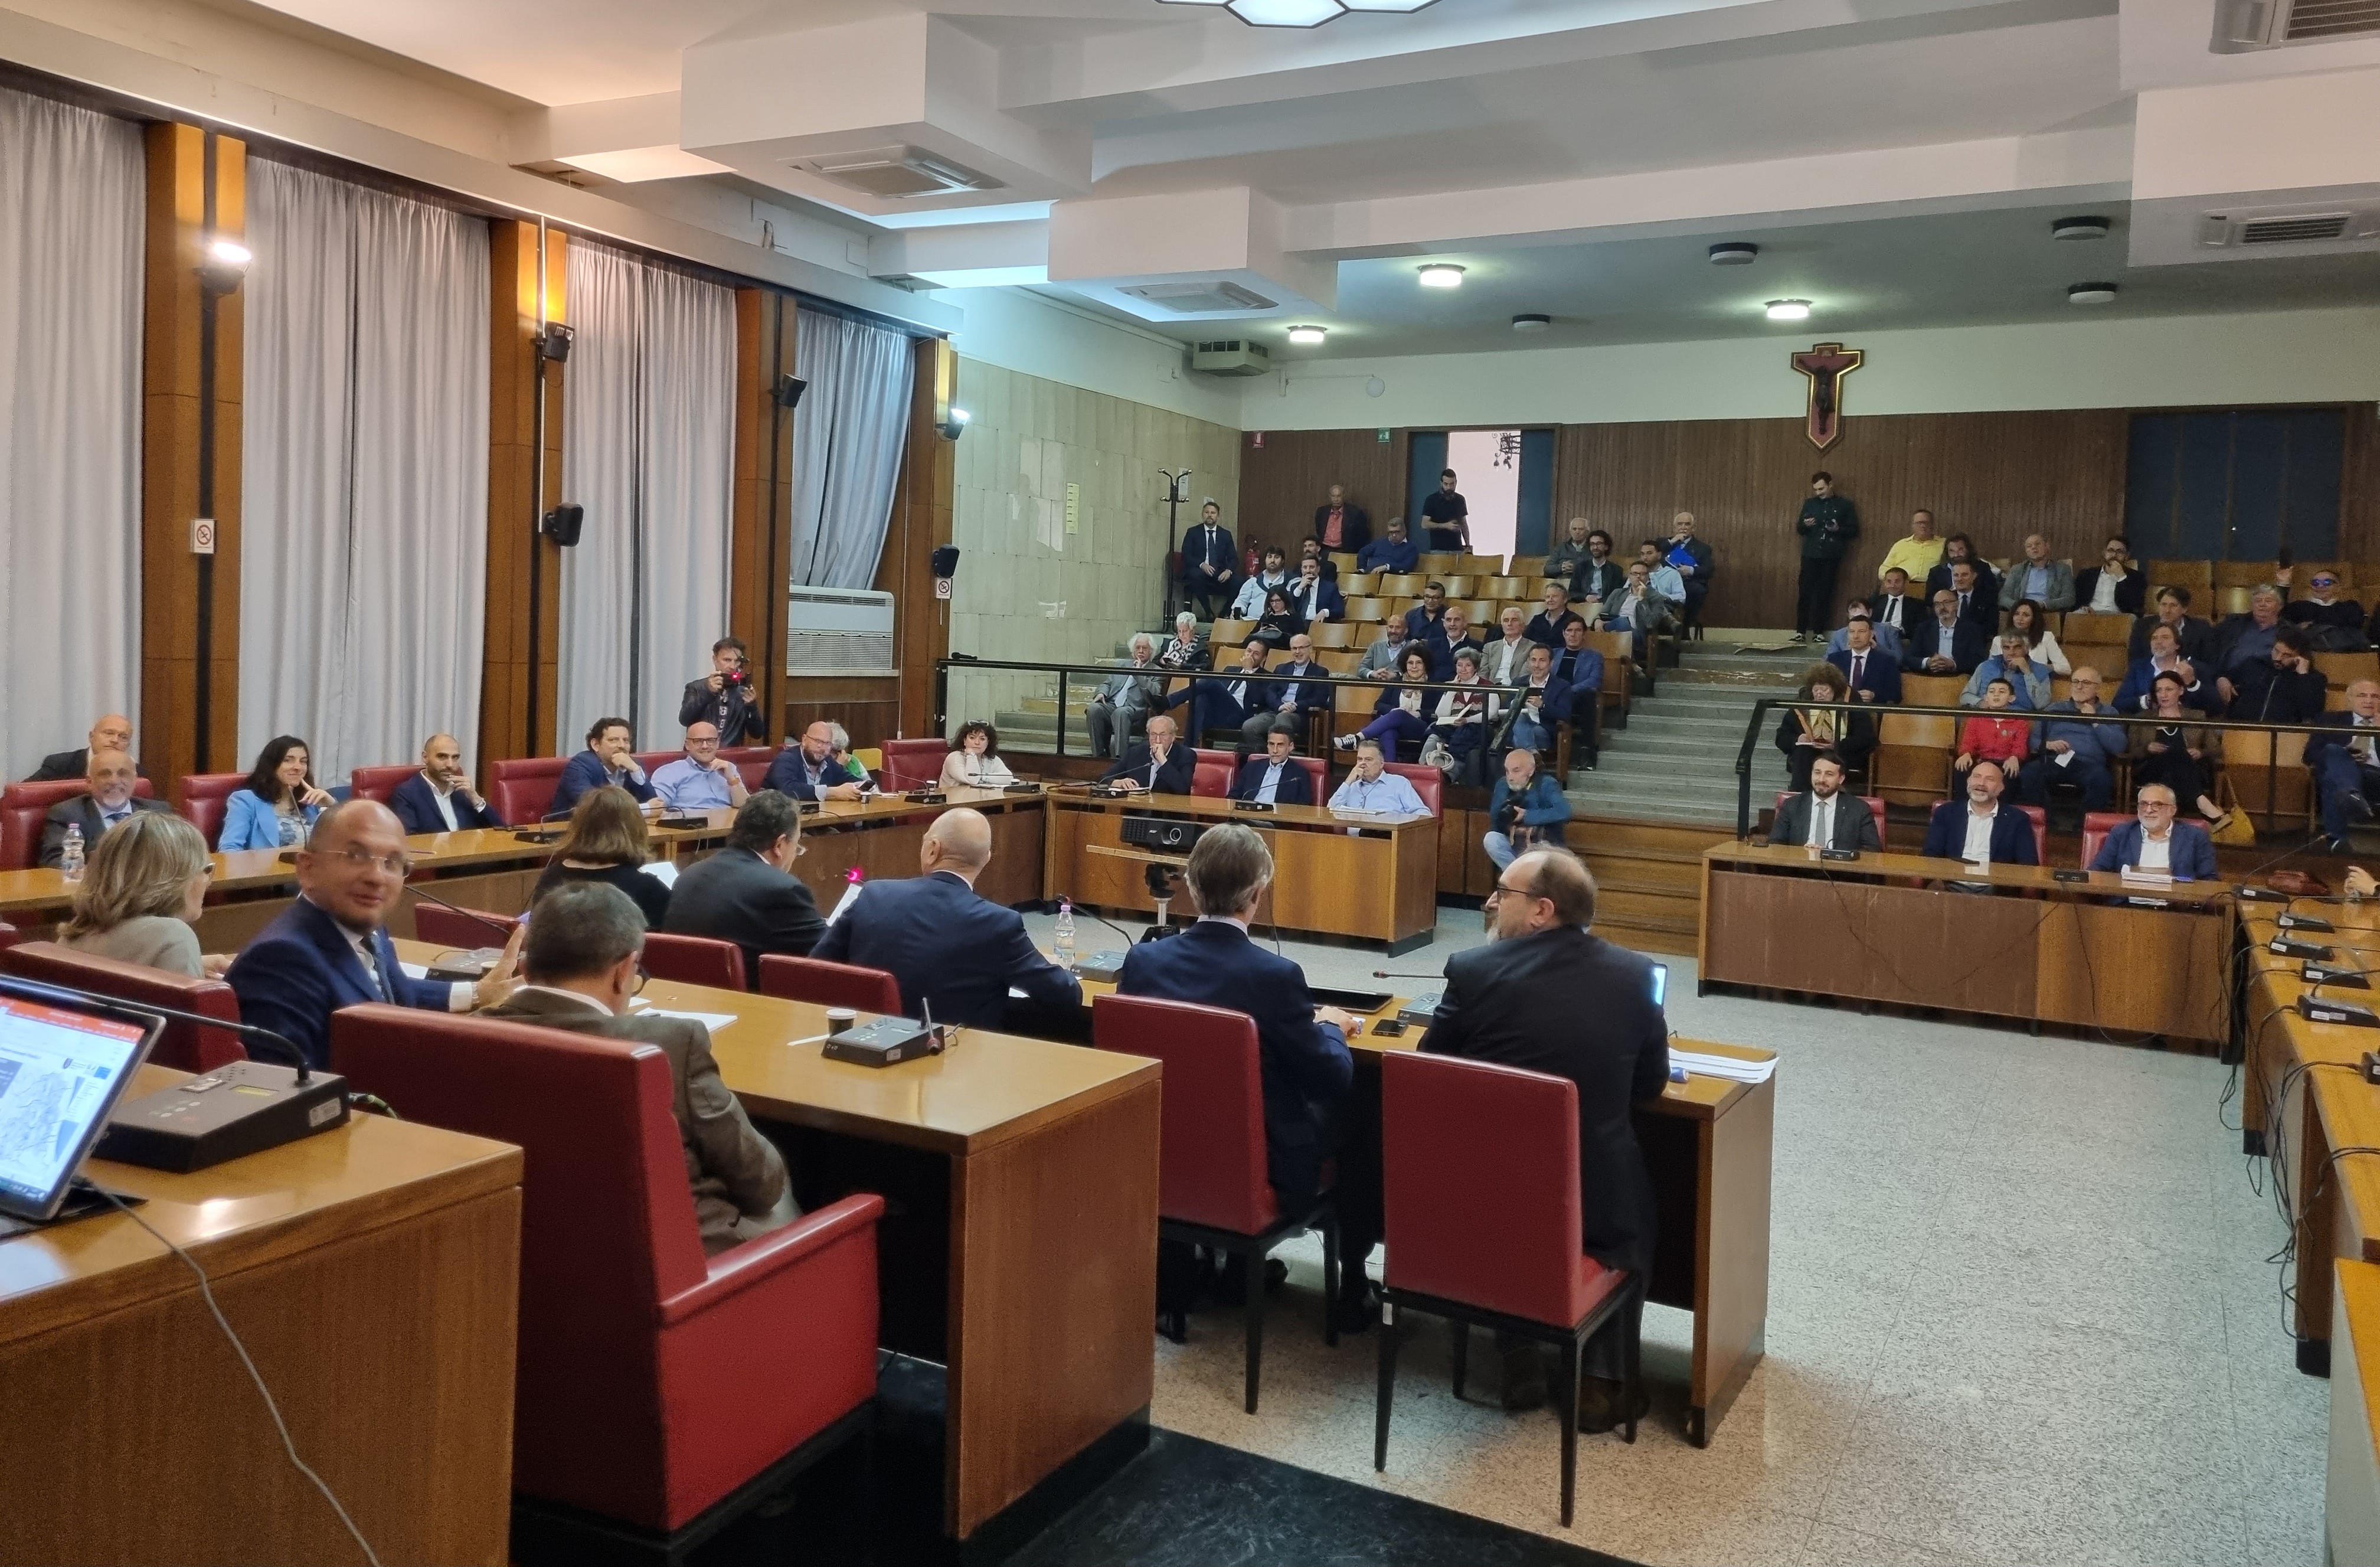 L'audizione della XII commissione nella sala consiliare della Provincia di Rieti.